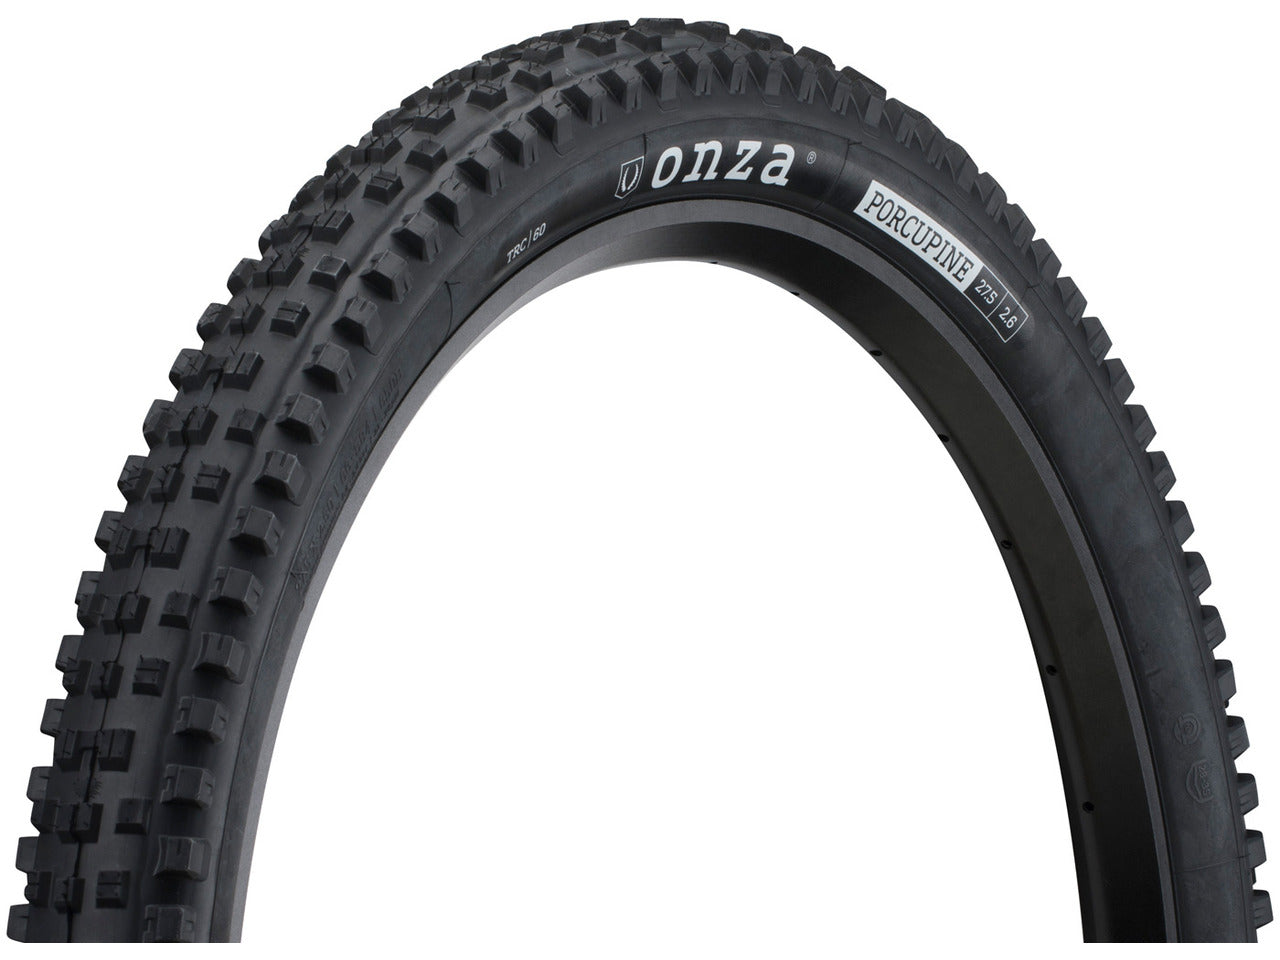 Onza Porcupine 27.5x2.6 tire